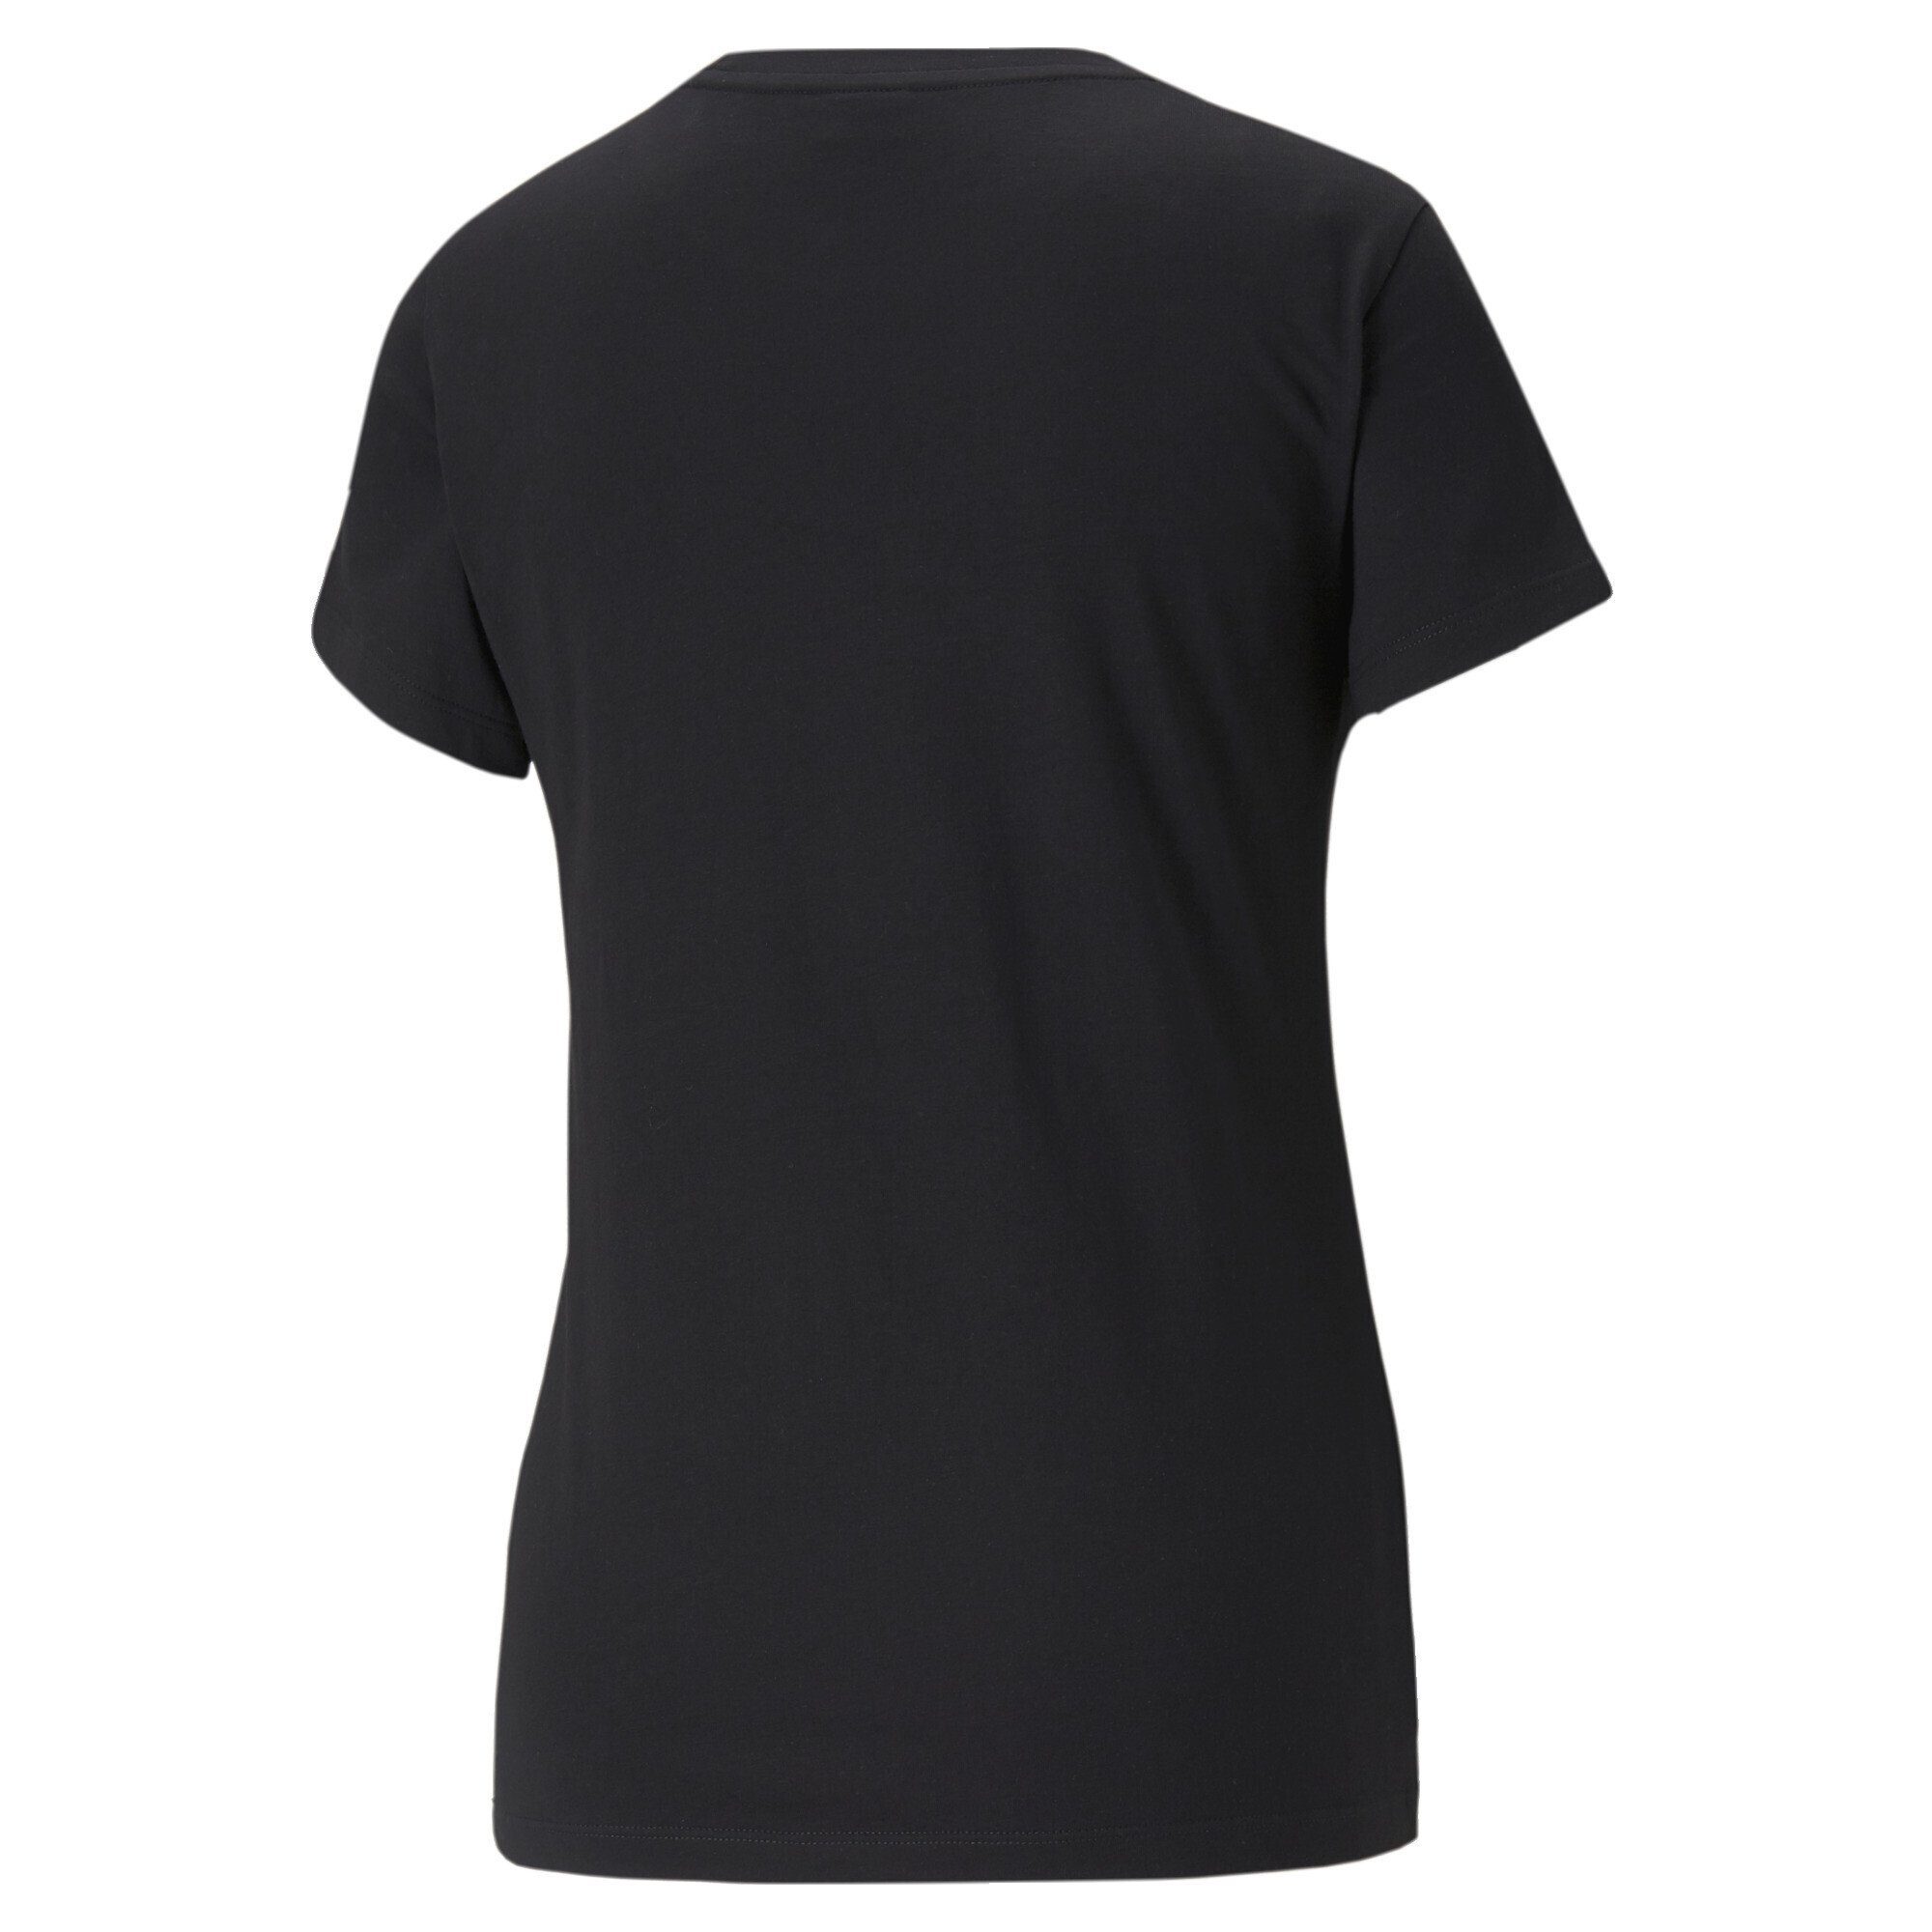 PUMA T-Shirt Classics Logo T-Shirt Black Damen